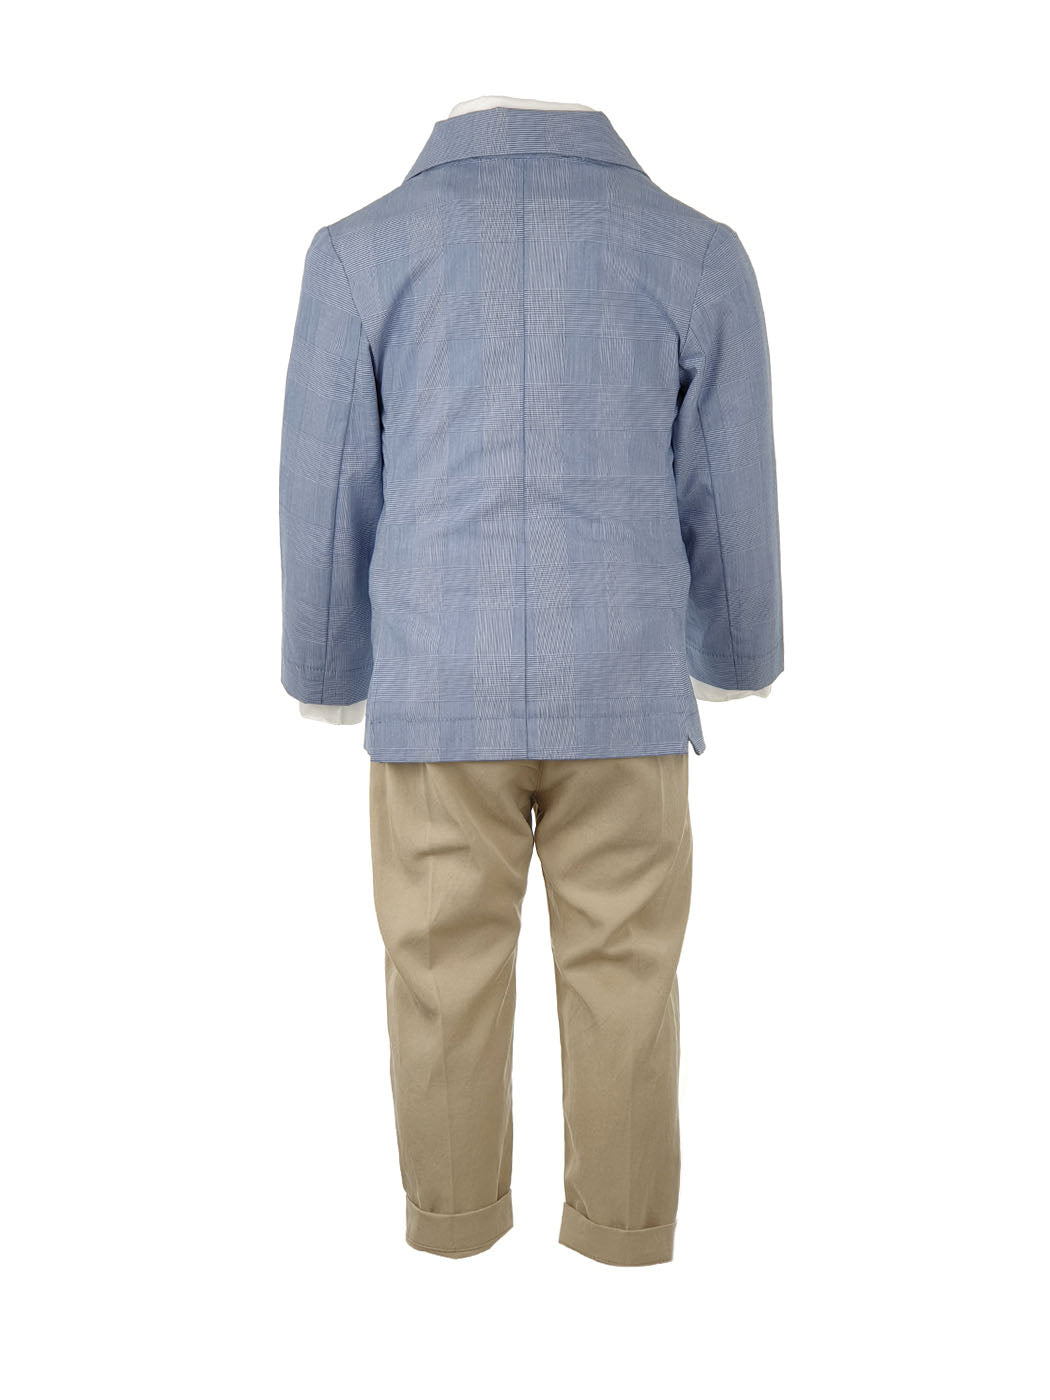 Baptism Cotton Suit set 7pcs for boy - REIMON